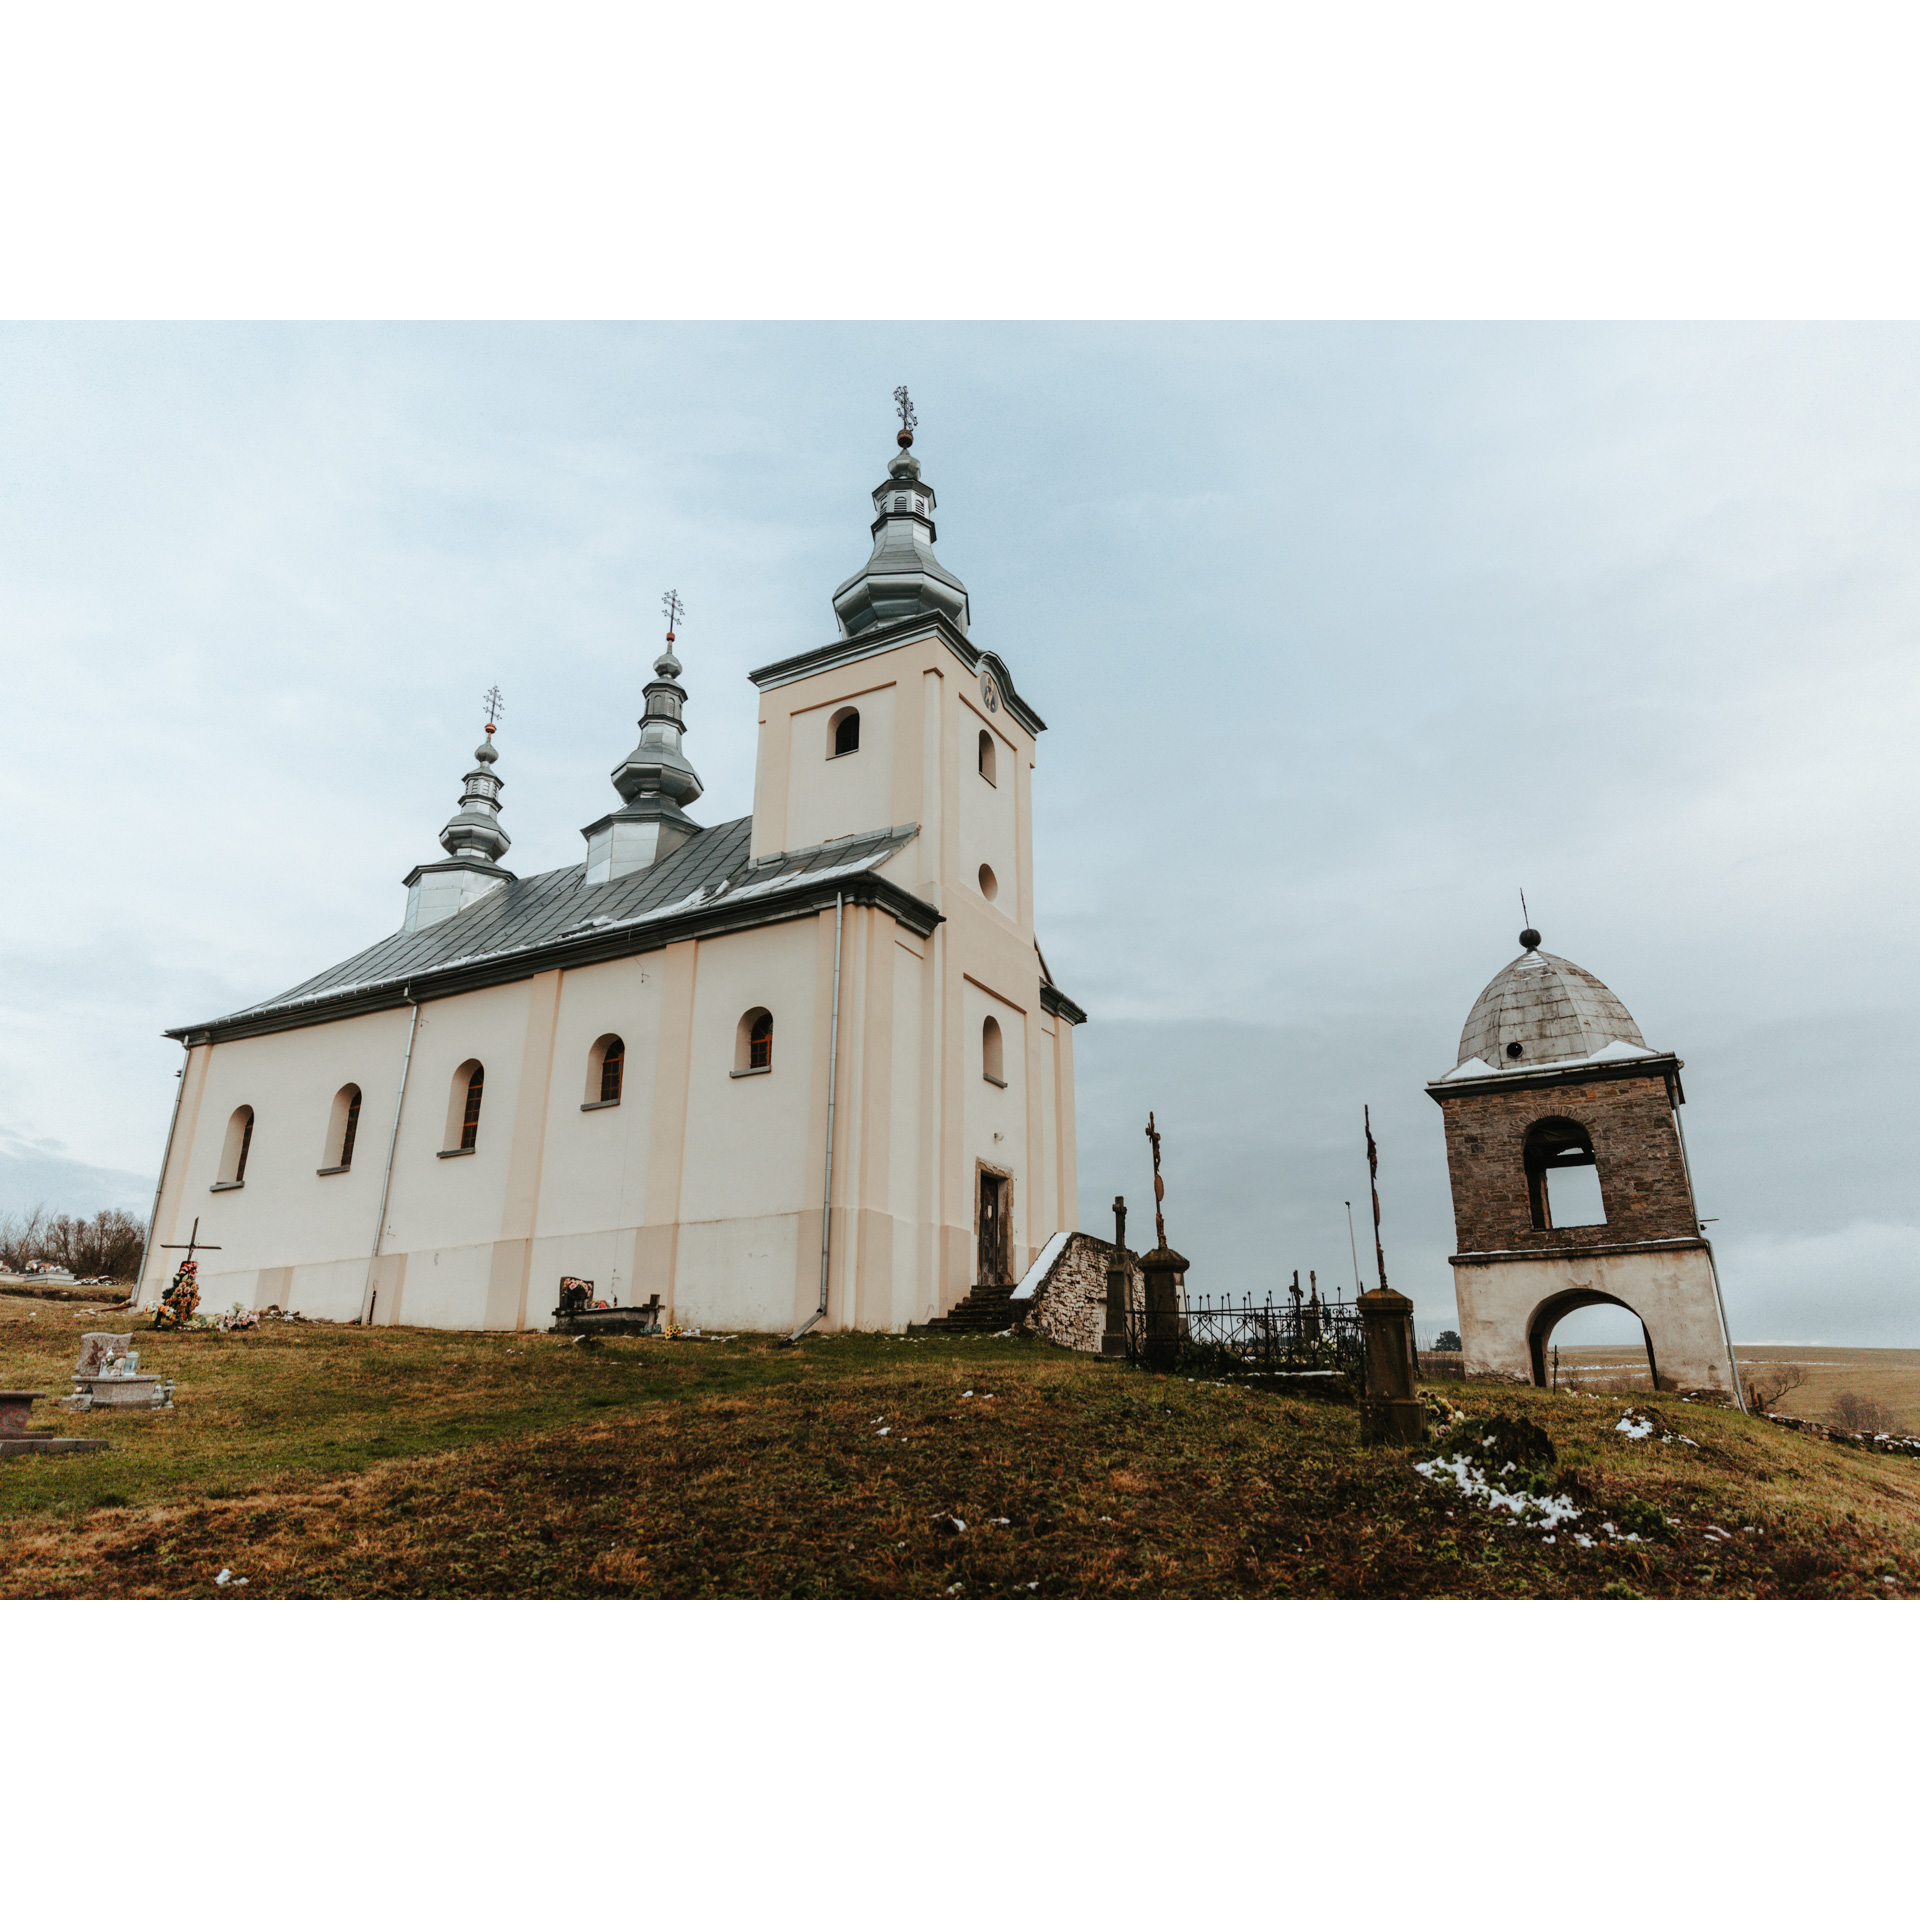 Jasna murowana cerkiew z trzema wieżyczkami z dzwonnicą obok na tle nieba